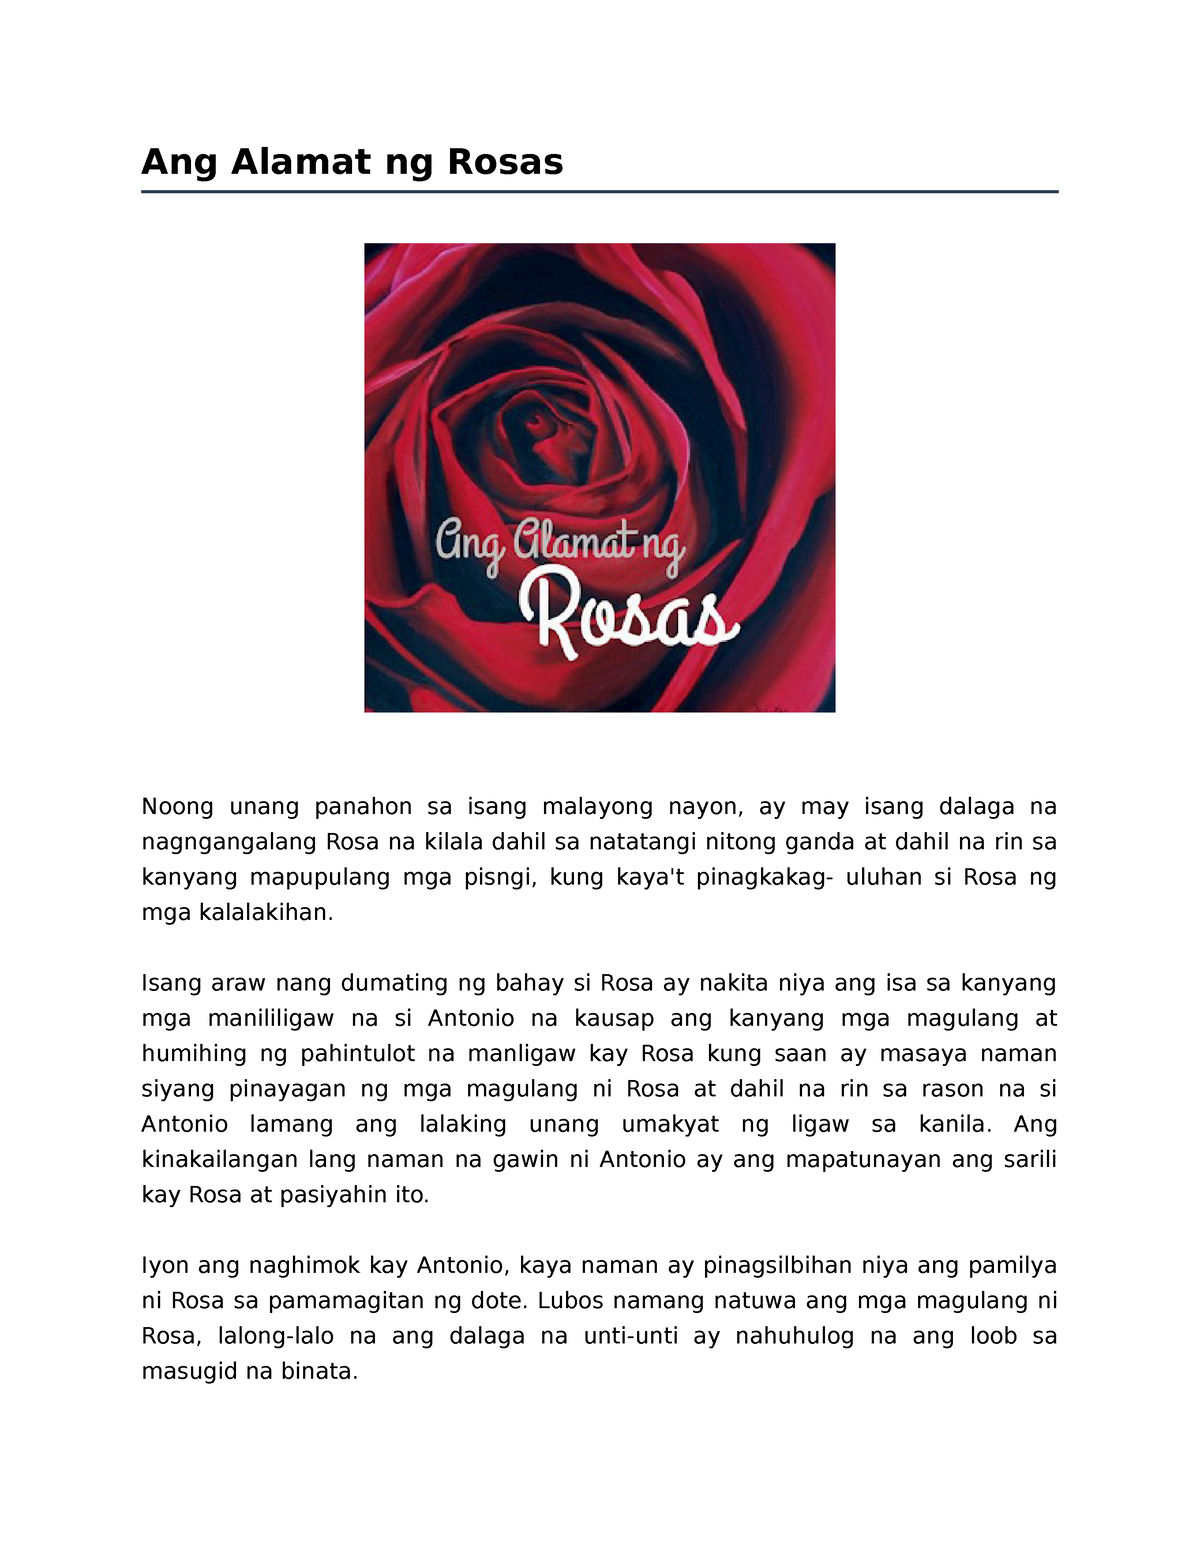 Ang Alamat ng Rosas - filipino 8 hjgbvtydcrtstrsytr